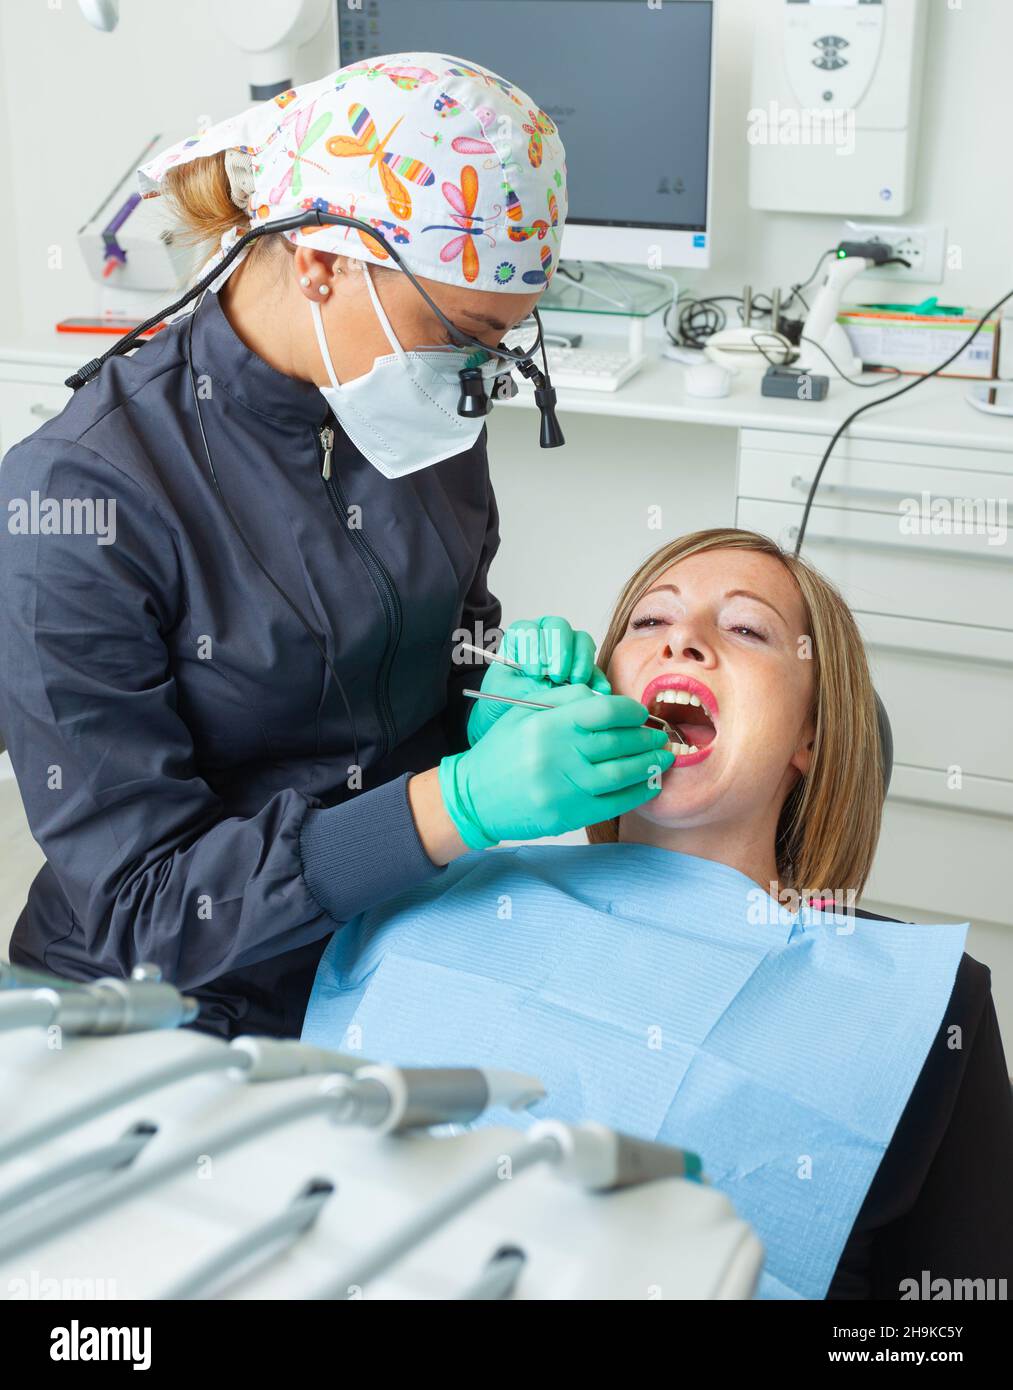 Joven Blond paciente femenino con boca abierta examinando la inspección dental en la oficina del dentista. Foto de stock